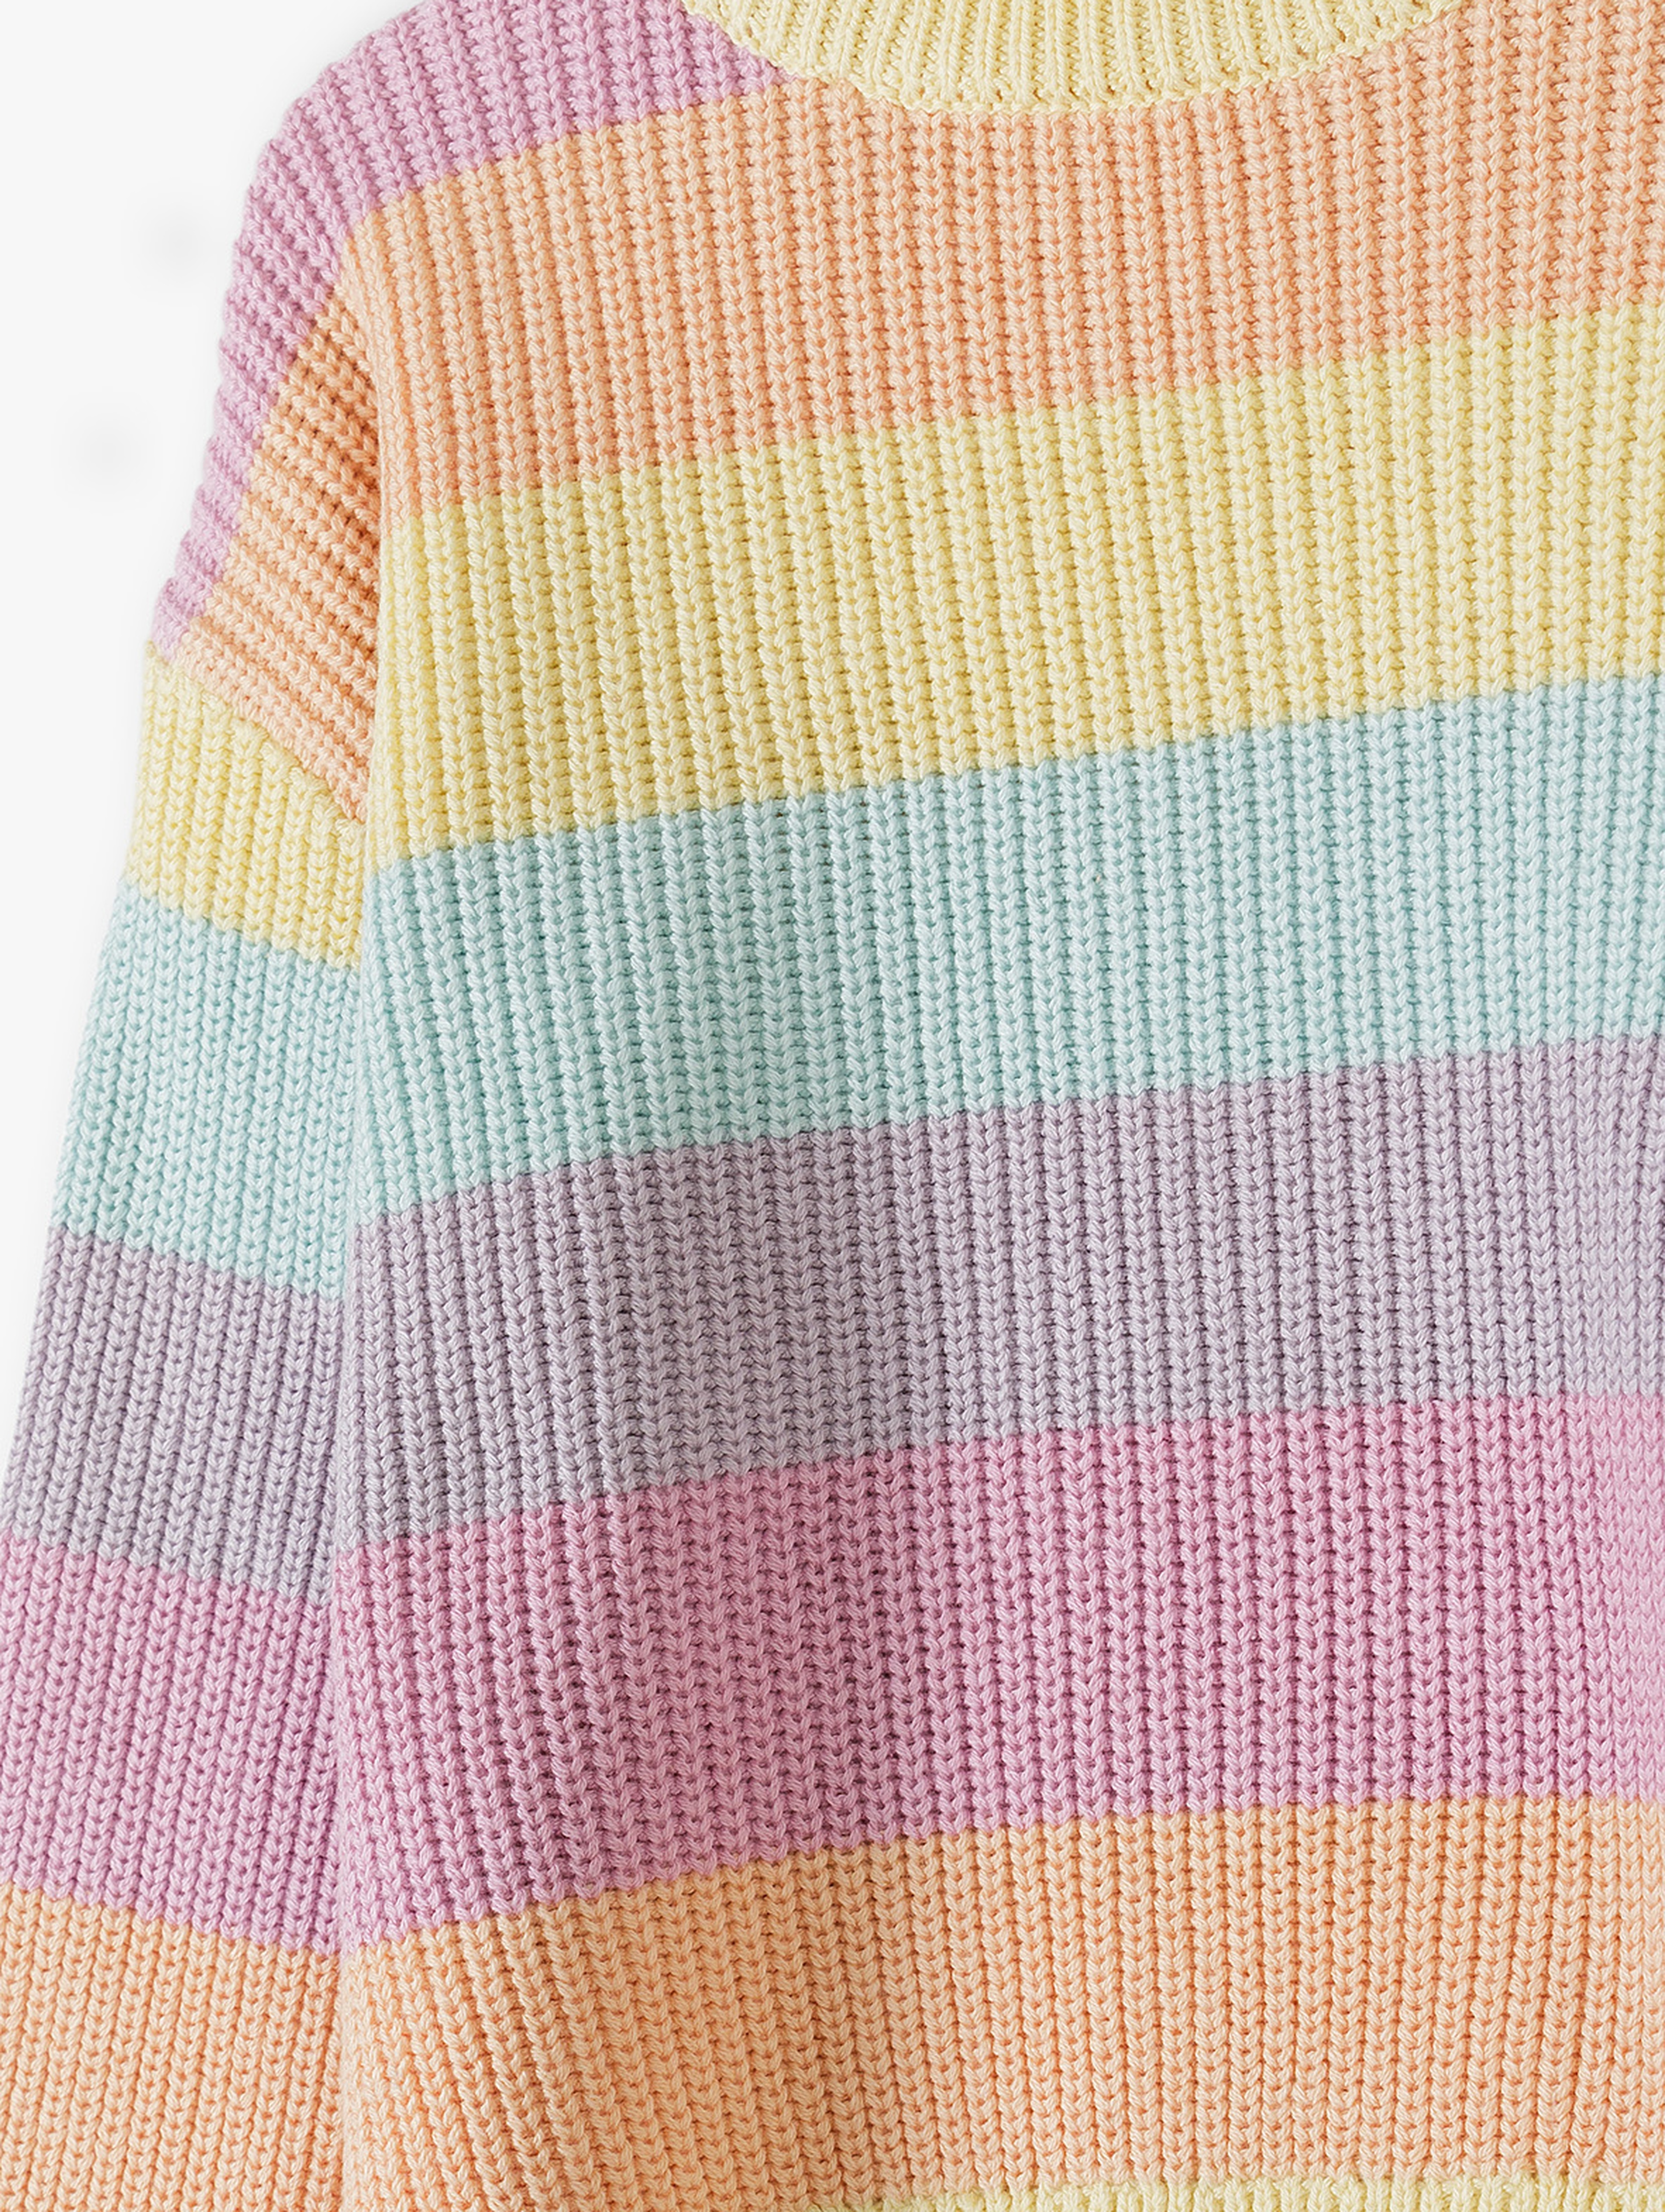 Sweter dziewczęcy w kolorowe poziome paski - 5.10.15.